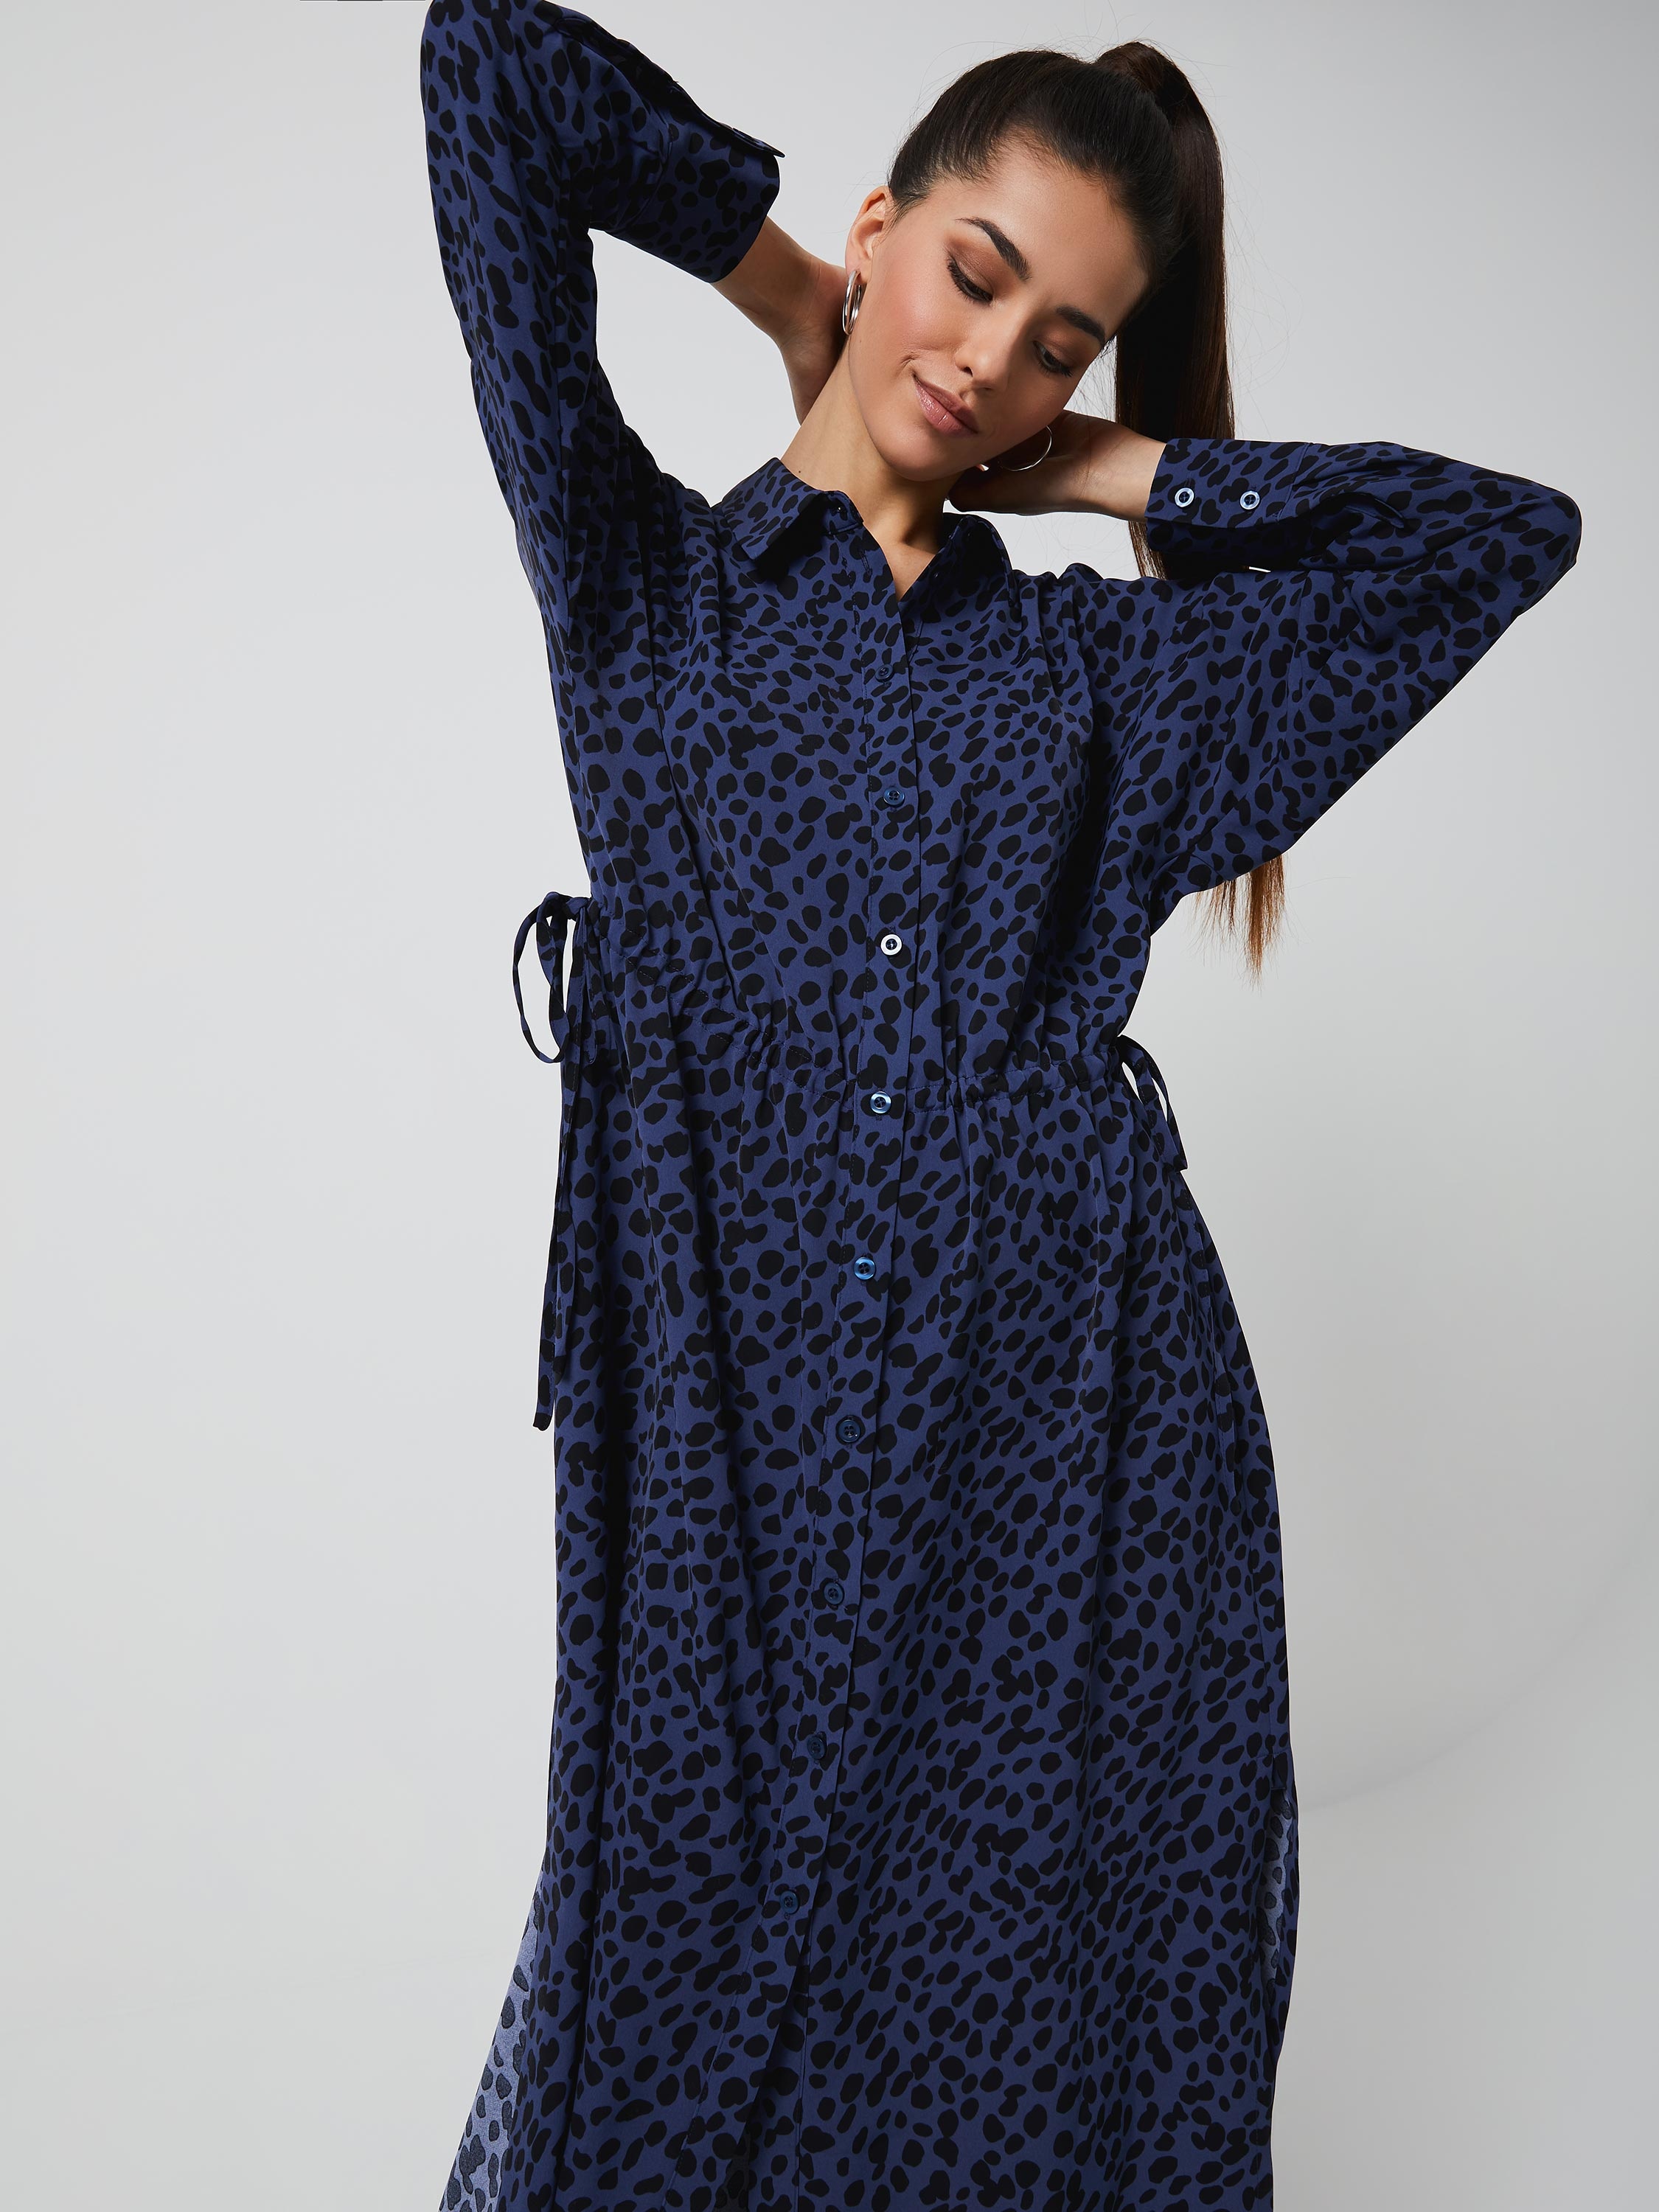 Длинное платье-рубашка цвет: синий графика мелкая, артикул: 18030207590 –купить в интернет-магазине sela